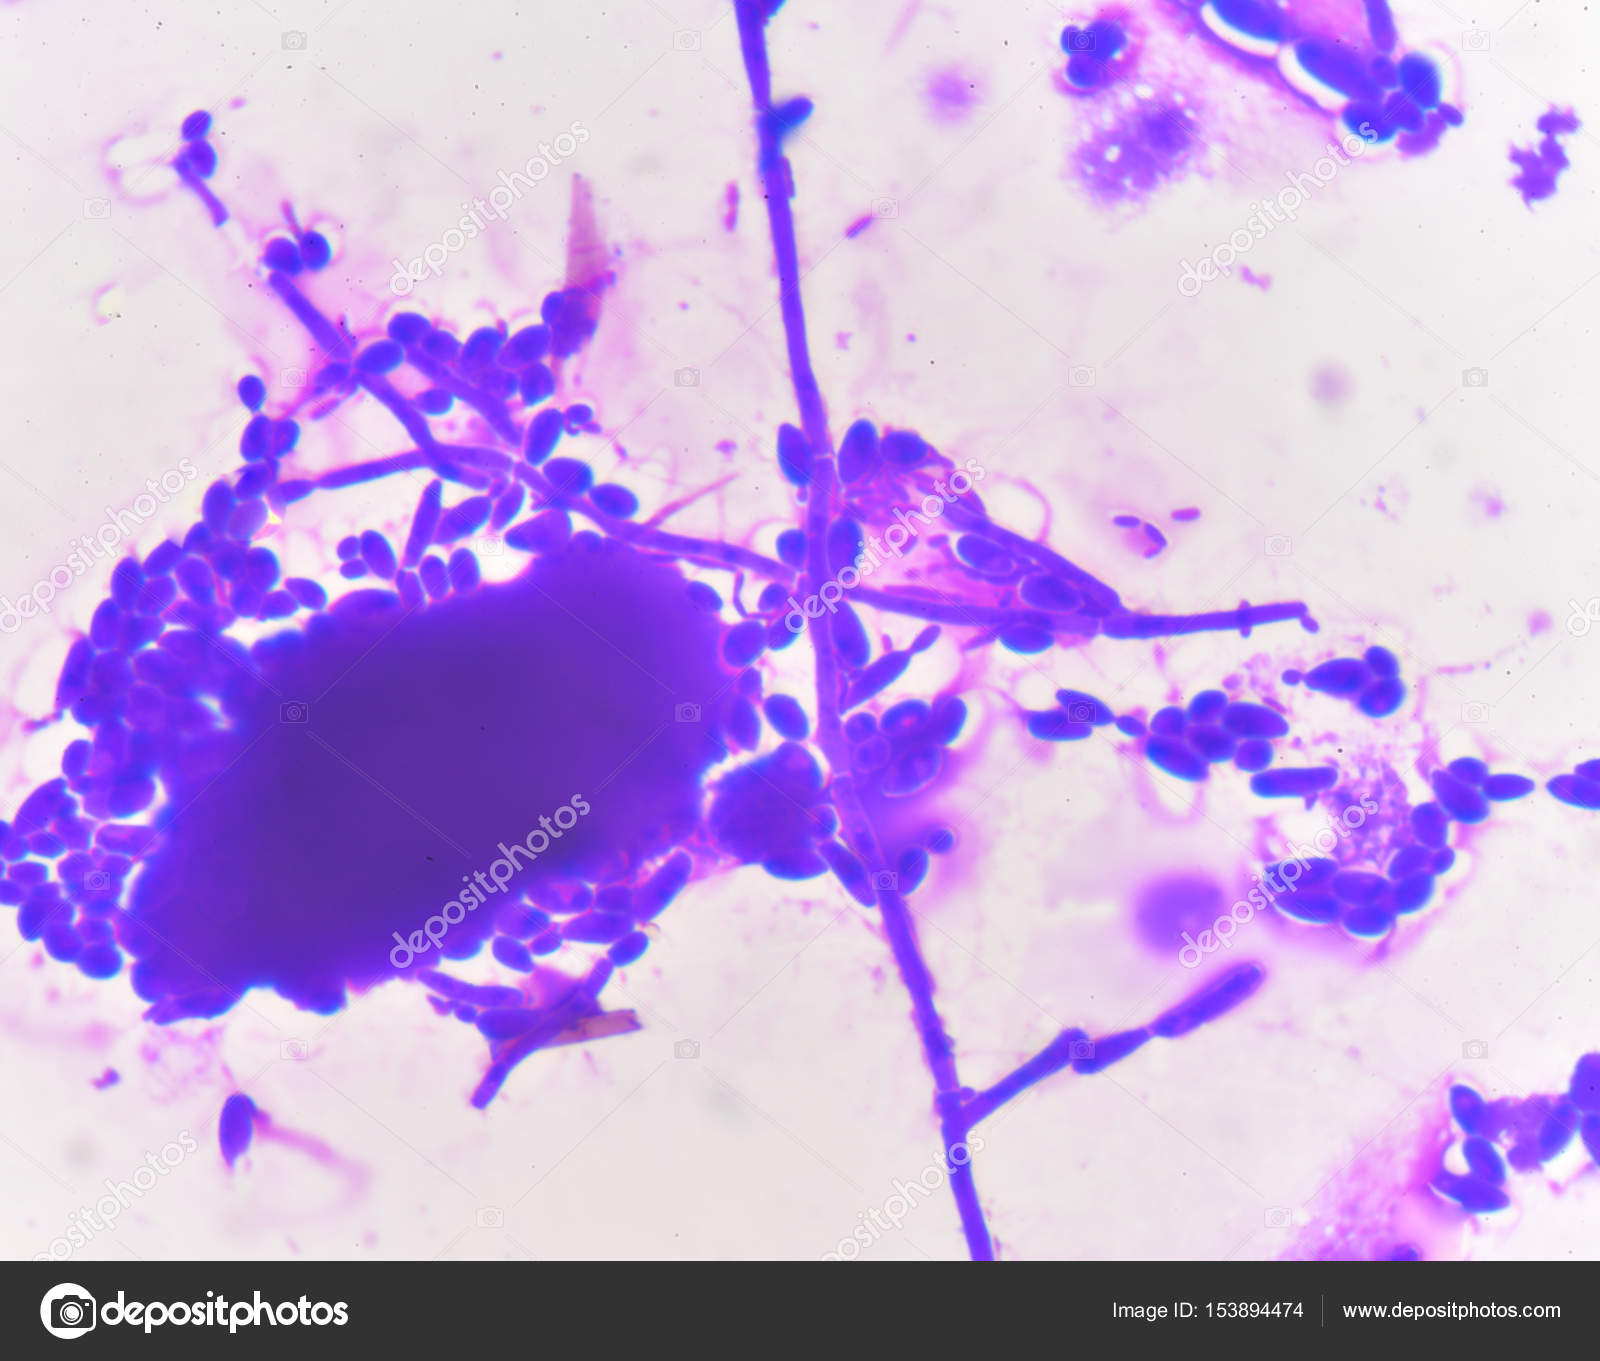 Бластоспоры в мазке что это. Candida дрожжевые клетки псевдомицелий. Грибы кандида микроскопия. Бластоспоры кандида. Дрожжеподобные грибы: псевдомицелий.